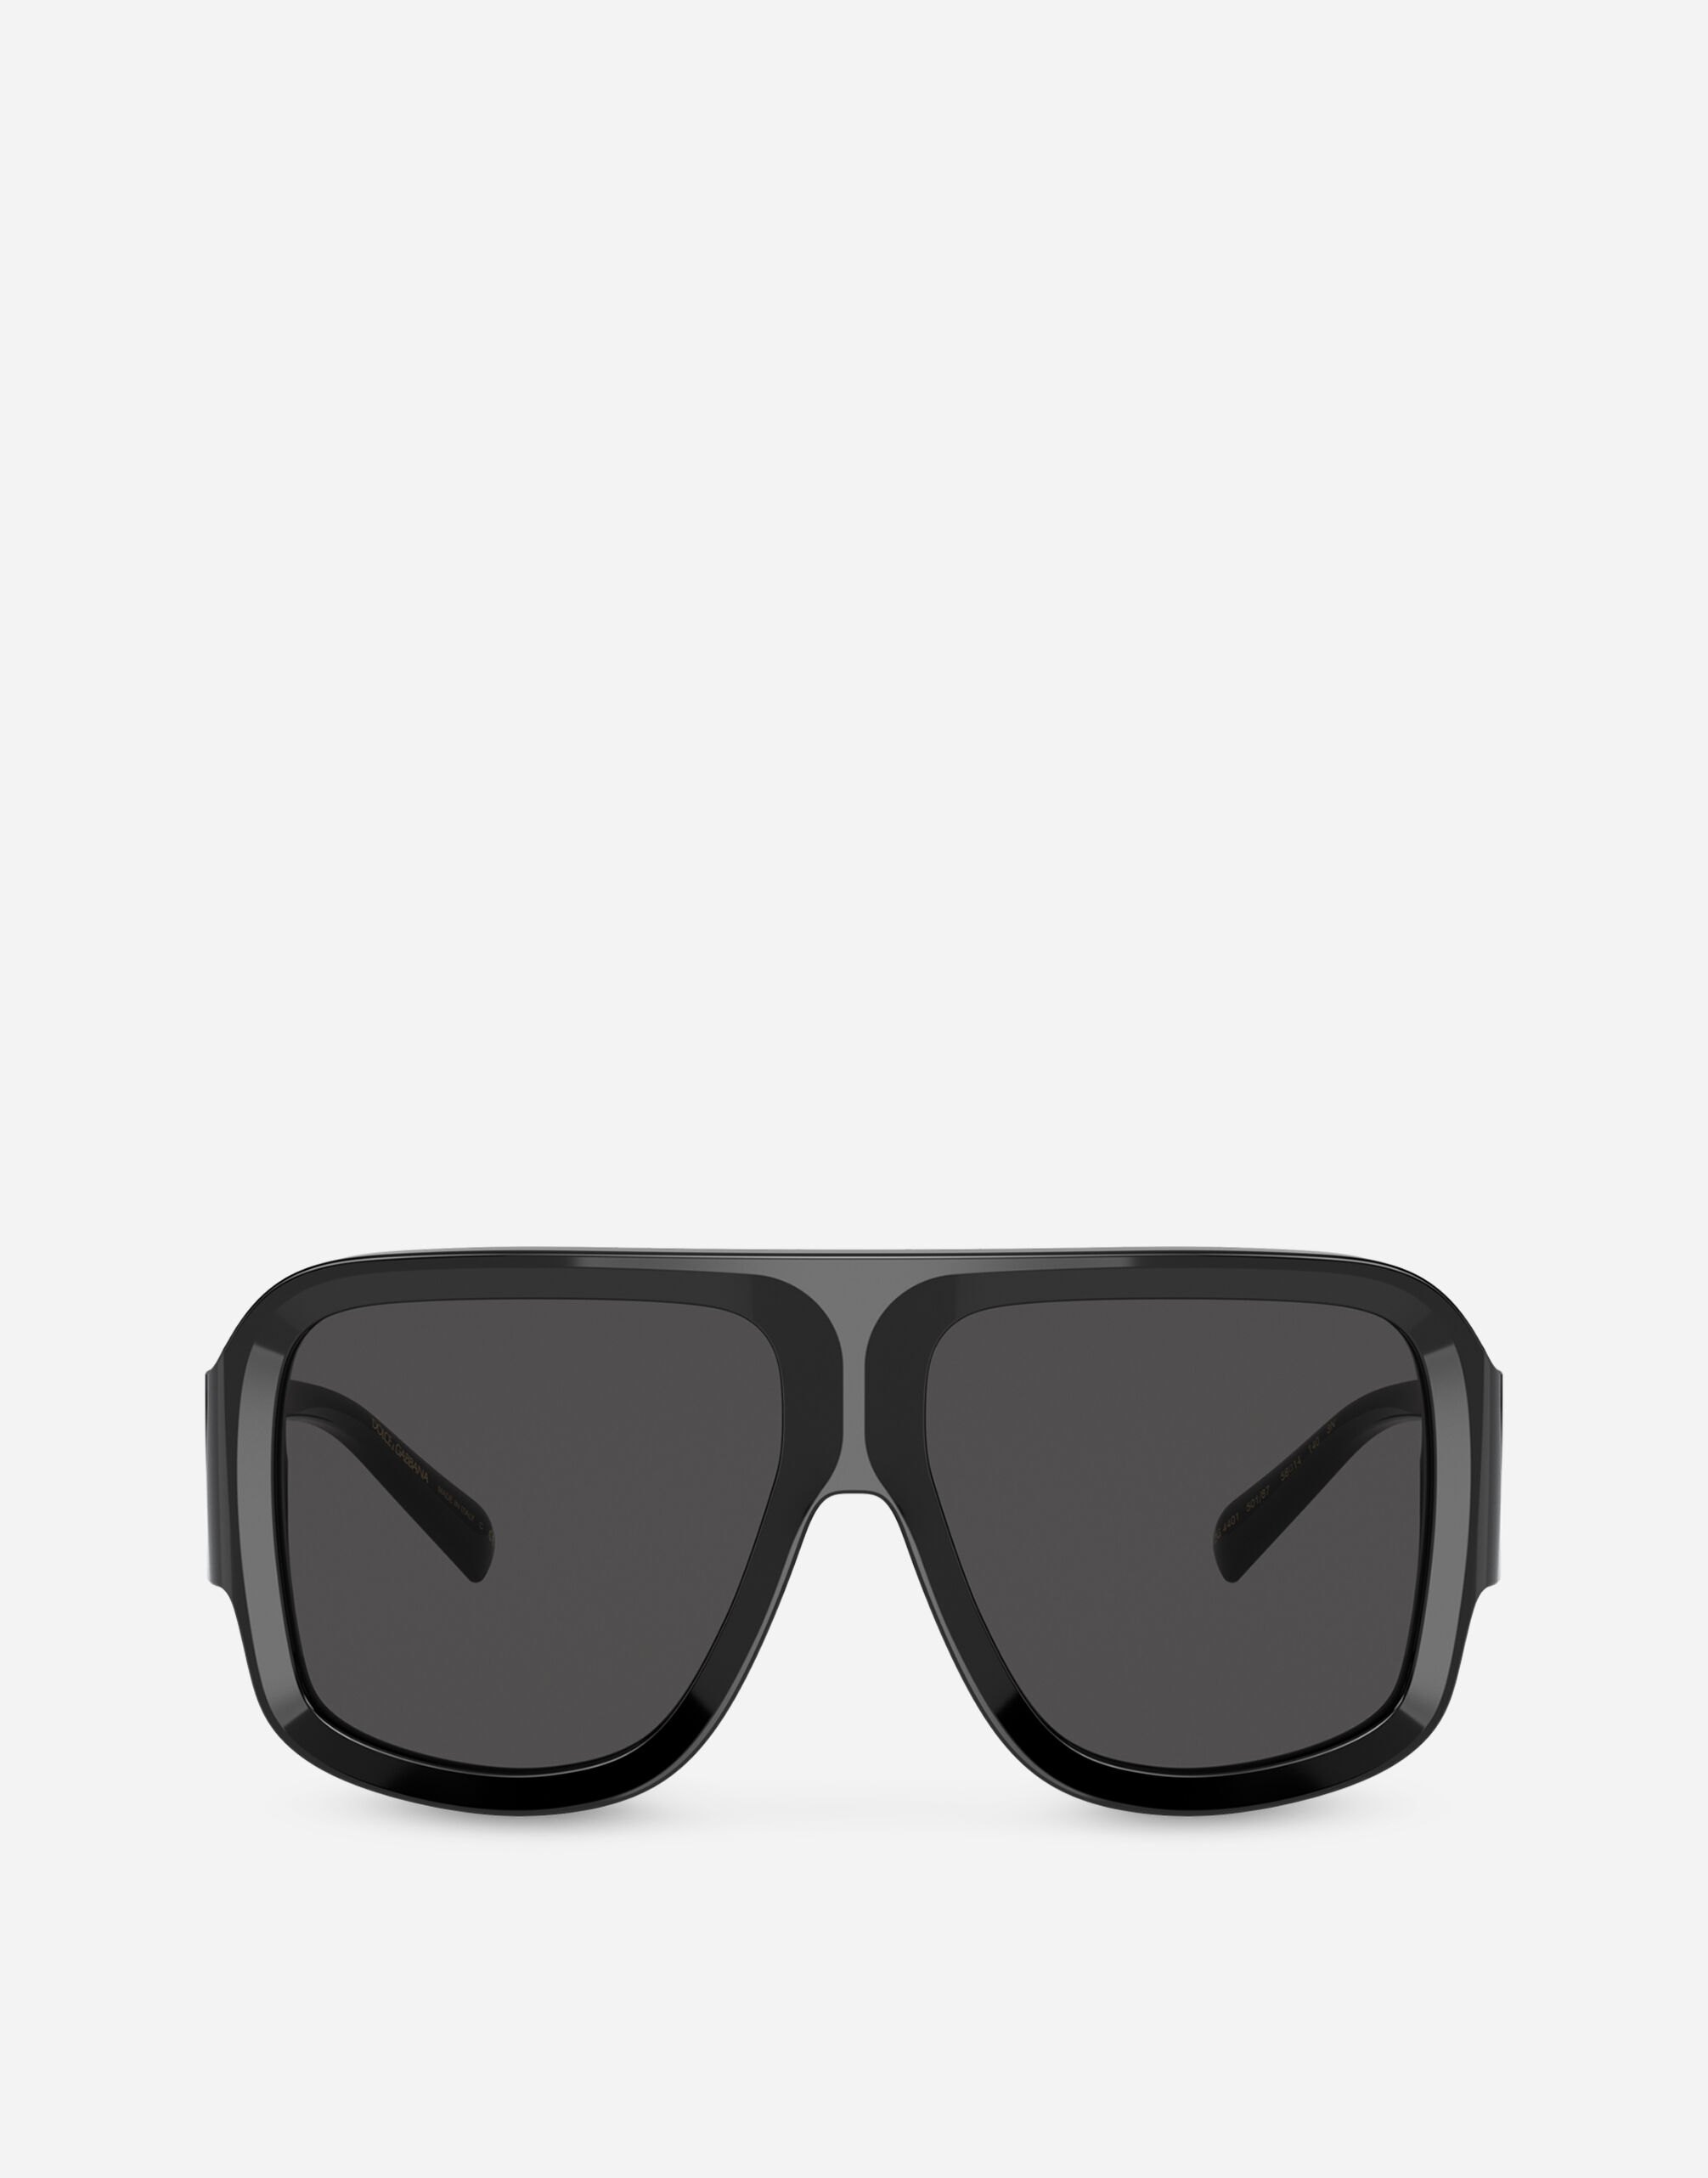 Dolce & Gabbana DG Crossed sunglasses Black M8C10JFUECG